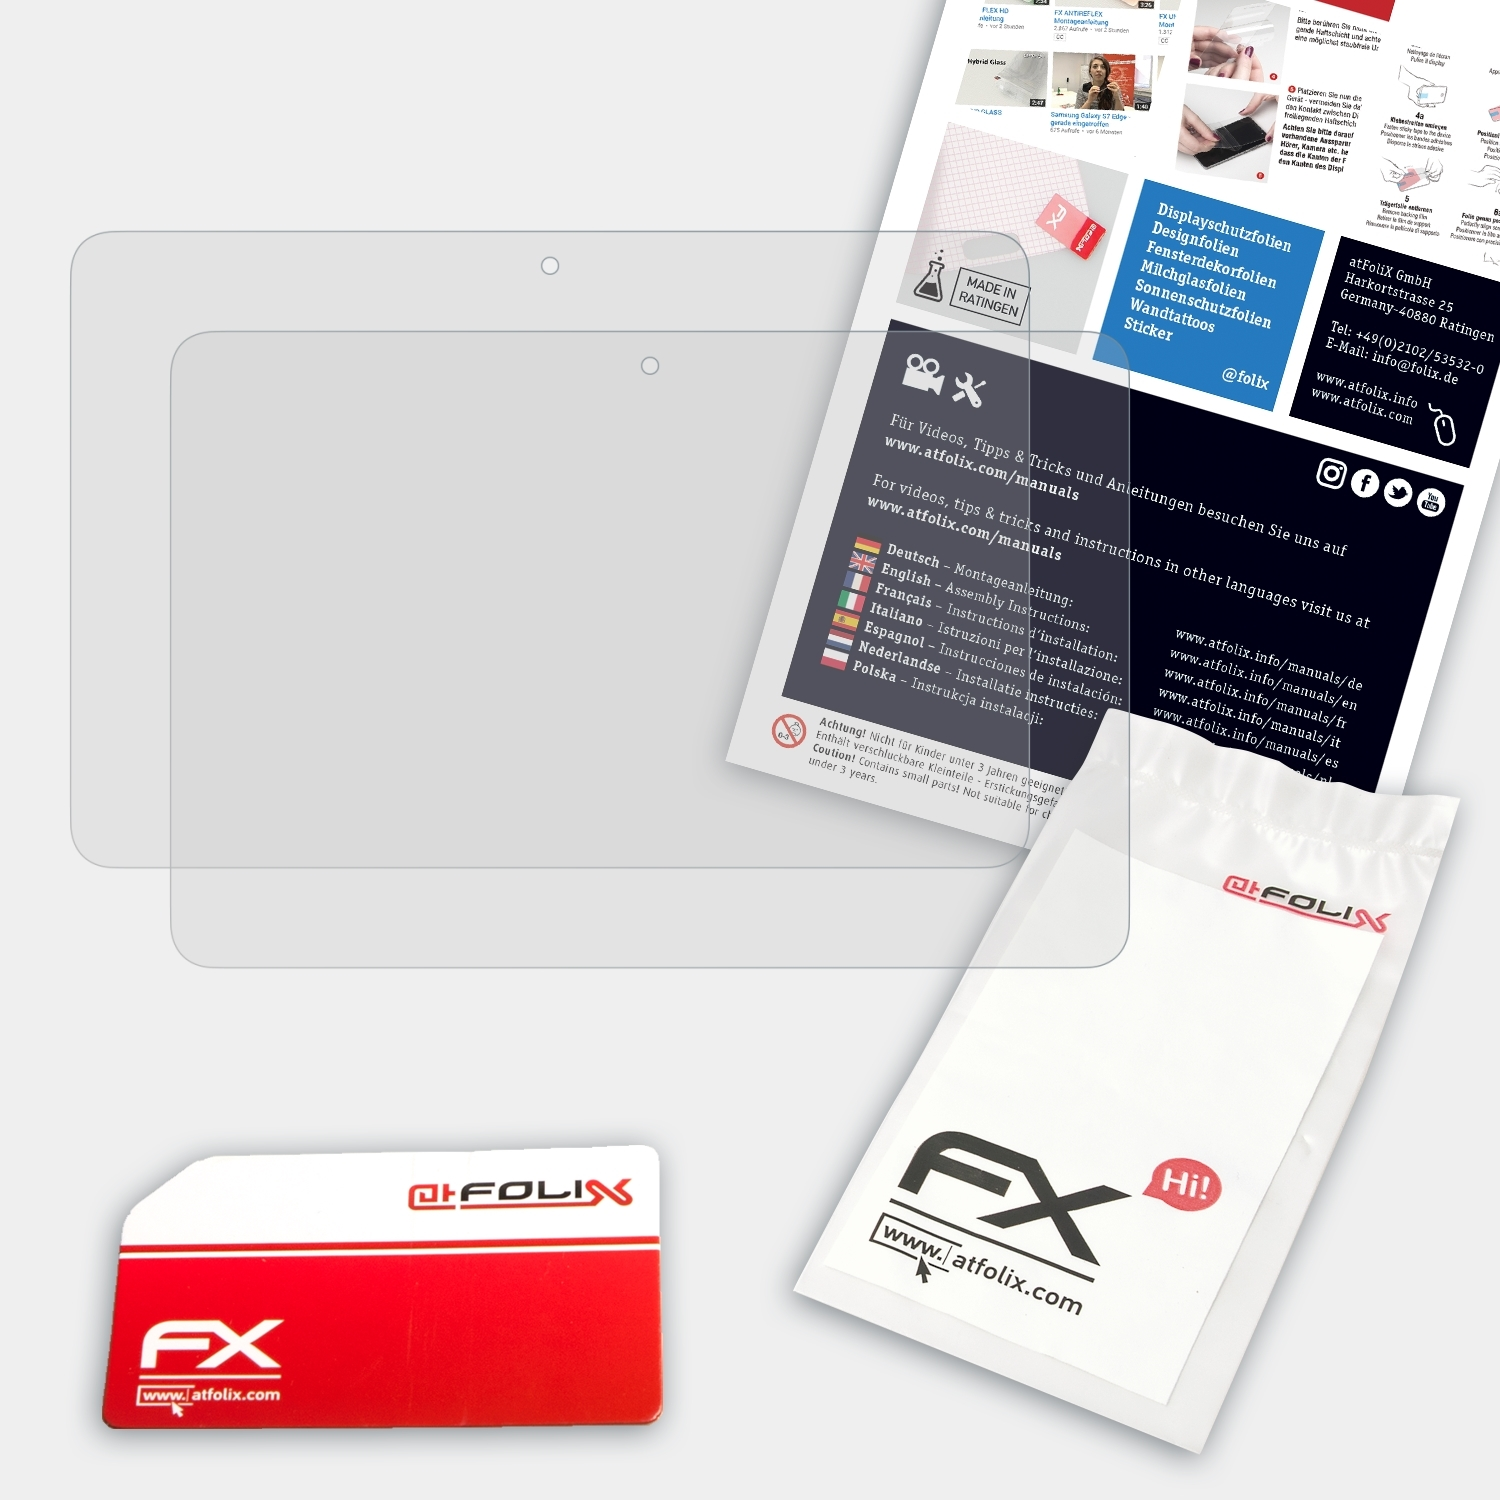 ATFOLIX 2x FX-Antireflex Book Displayschutz(für Transformer T101HA) Asus